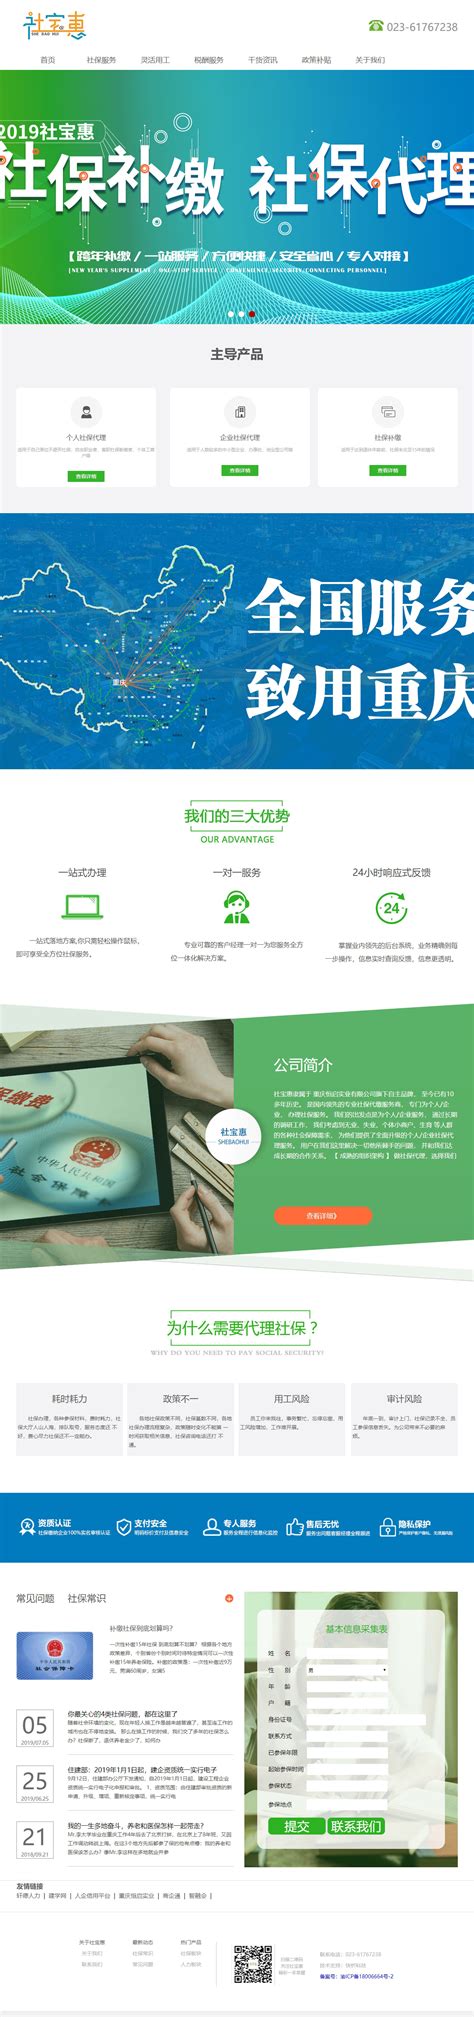 重庆网站制作服务